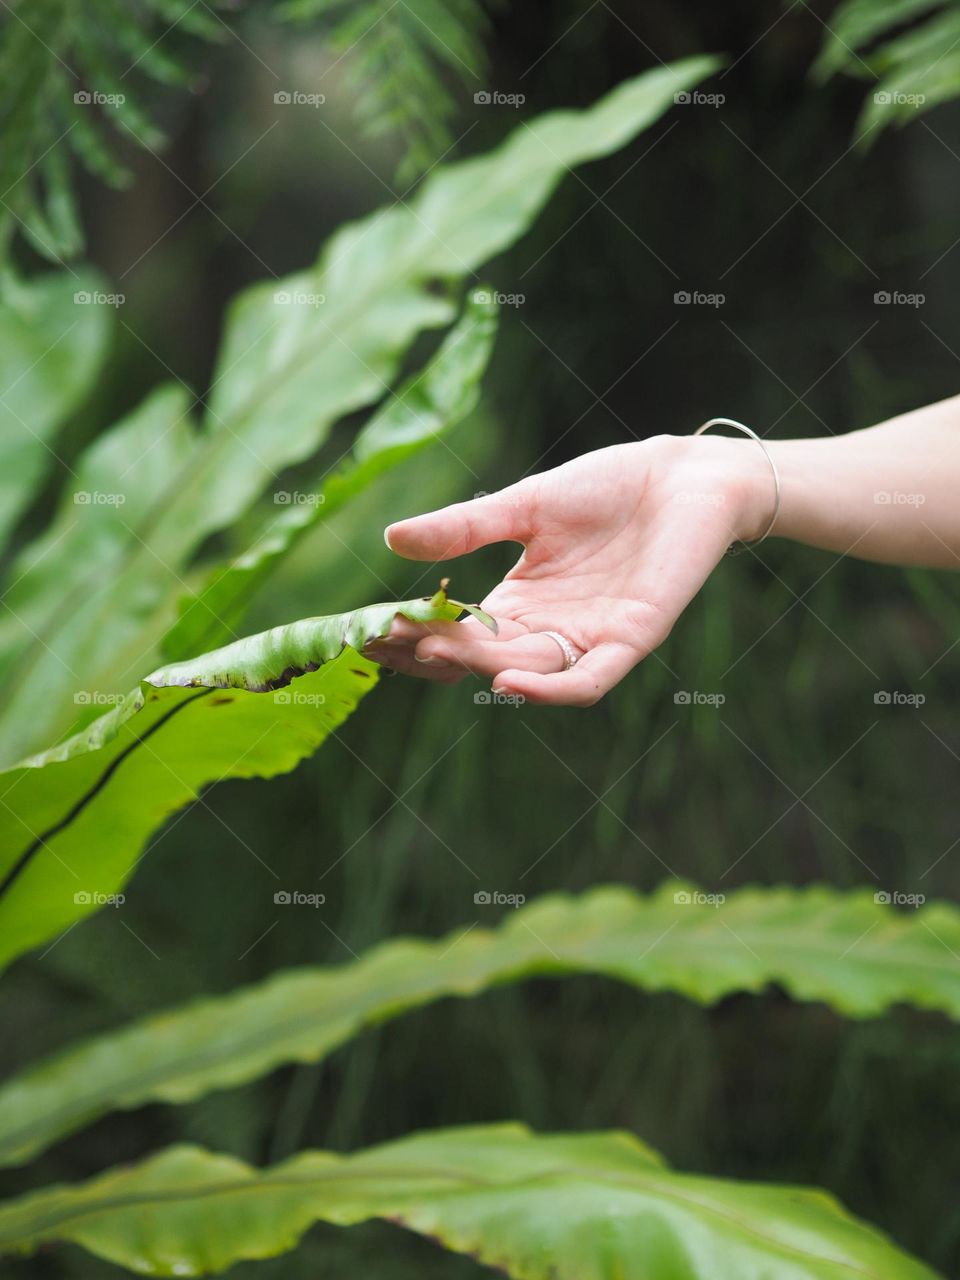 Female hand holding green leaves in botanical garden 